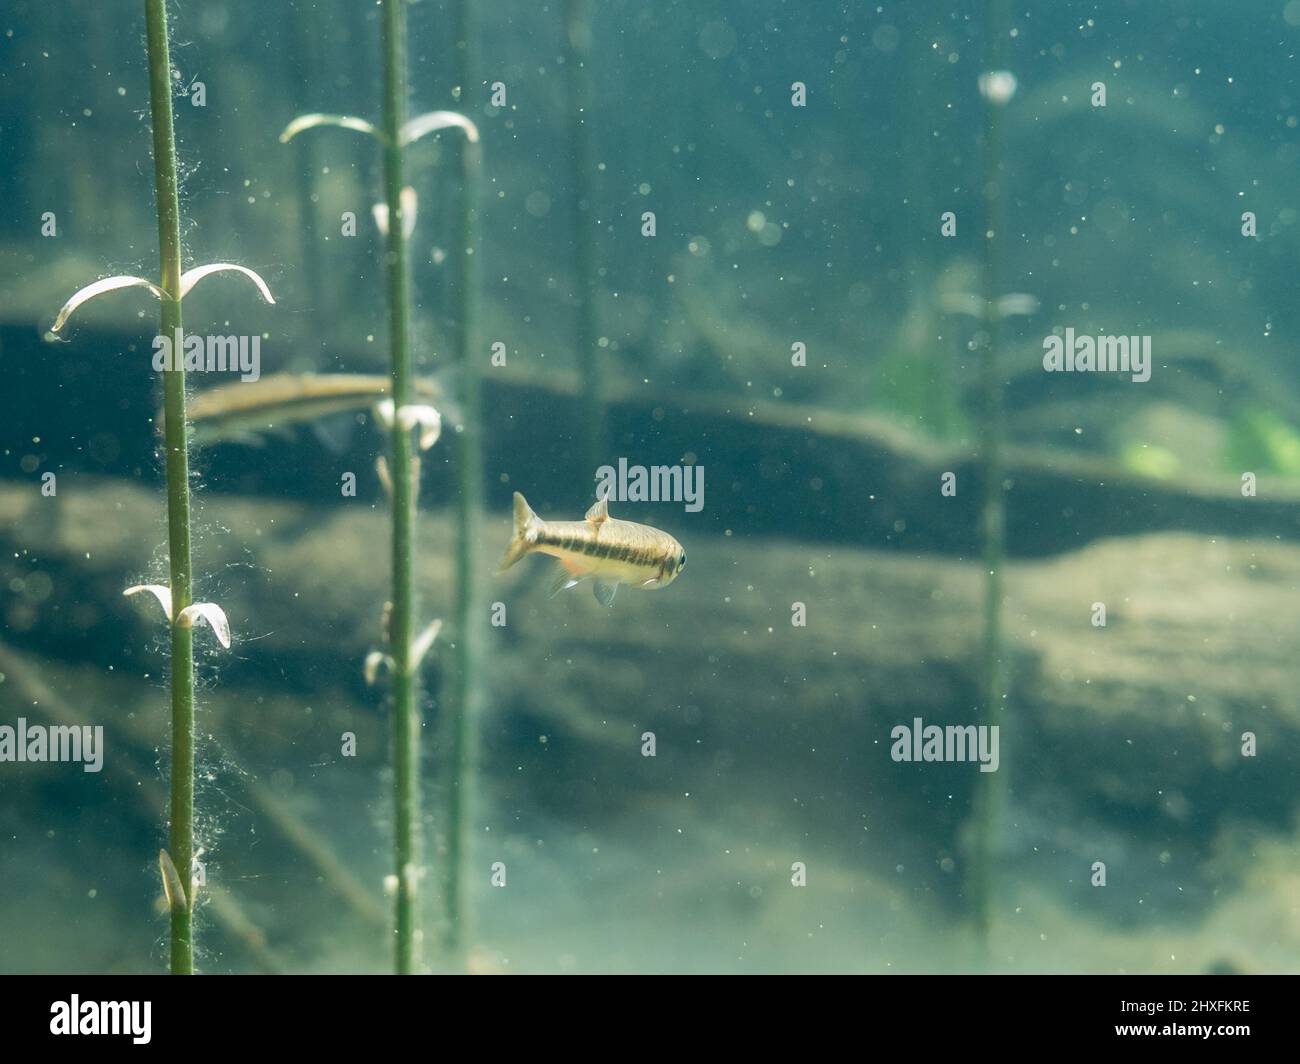 Common minnow fish swimming underwater in lake Stock Photo